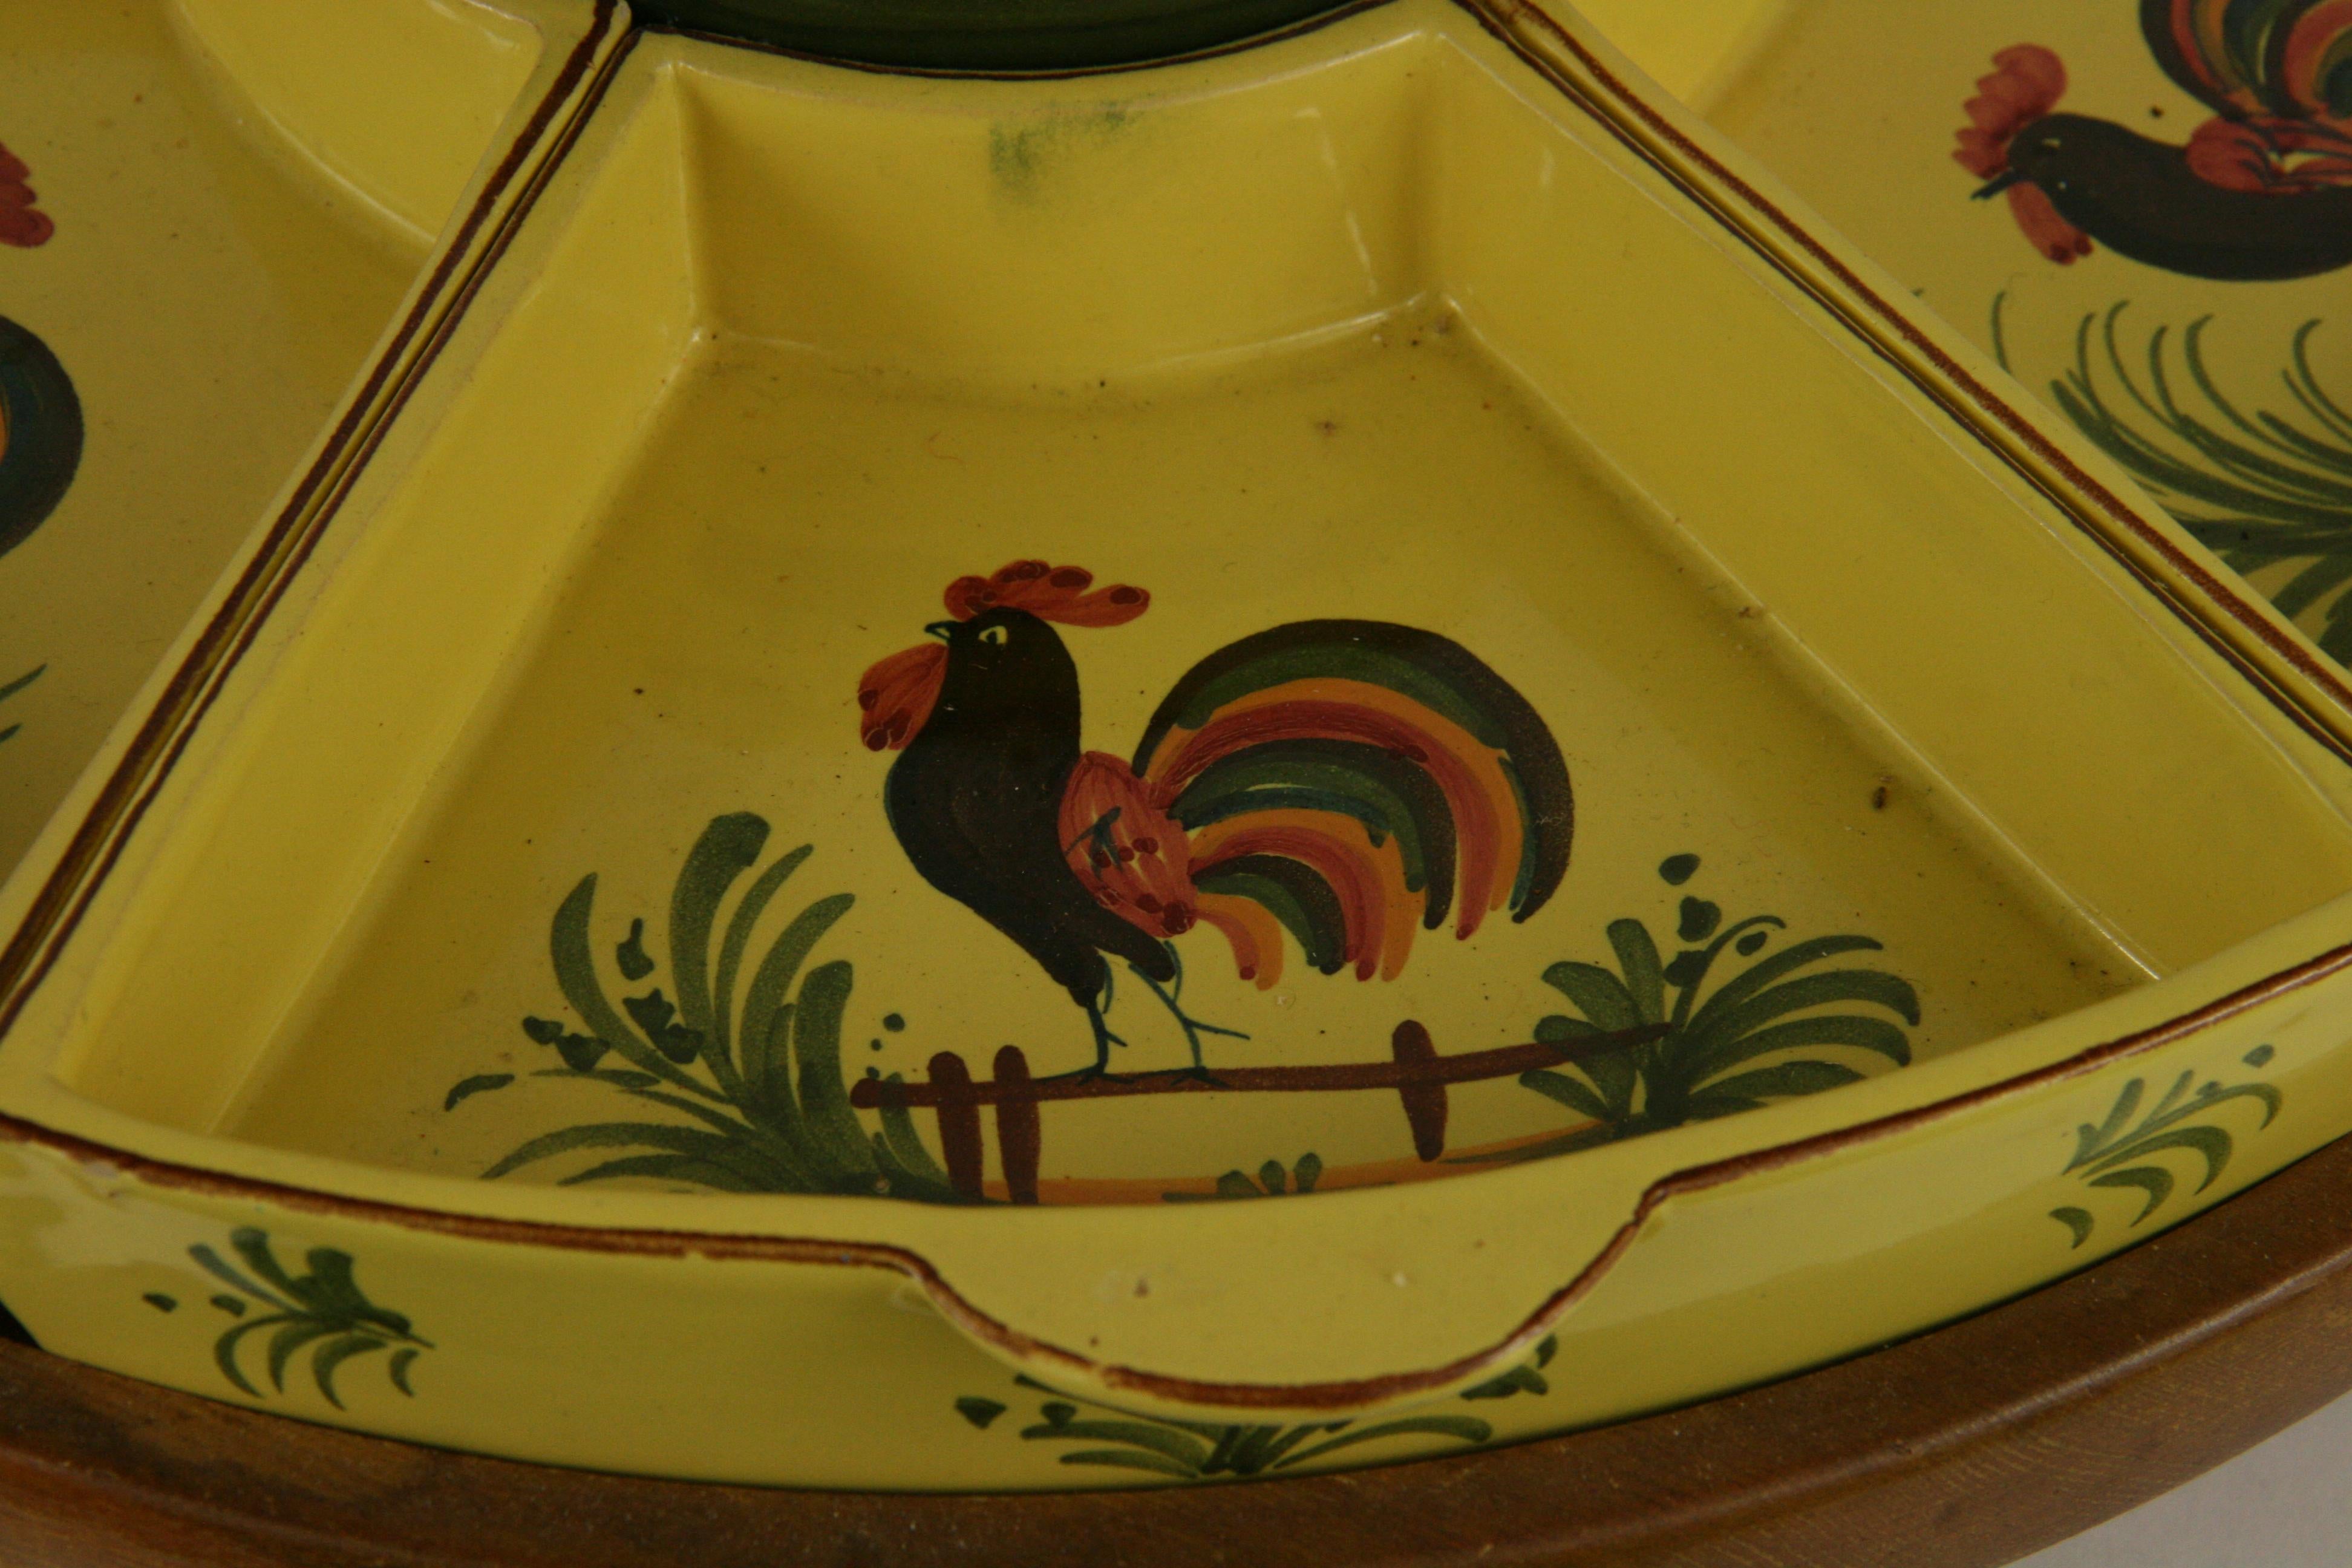 Serveur italien en céramique peint à la main avec 6 plats amovibles et un bol central avec couvercle,
Posé sur un socle en bois rotatif.